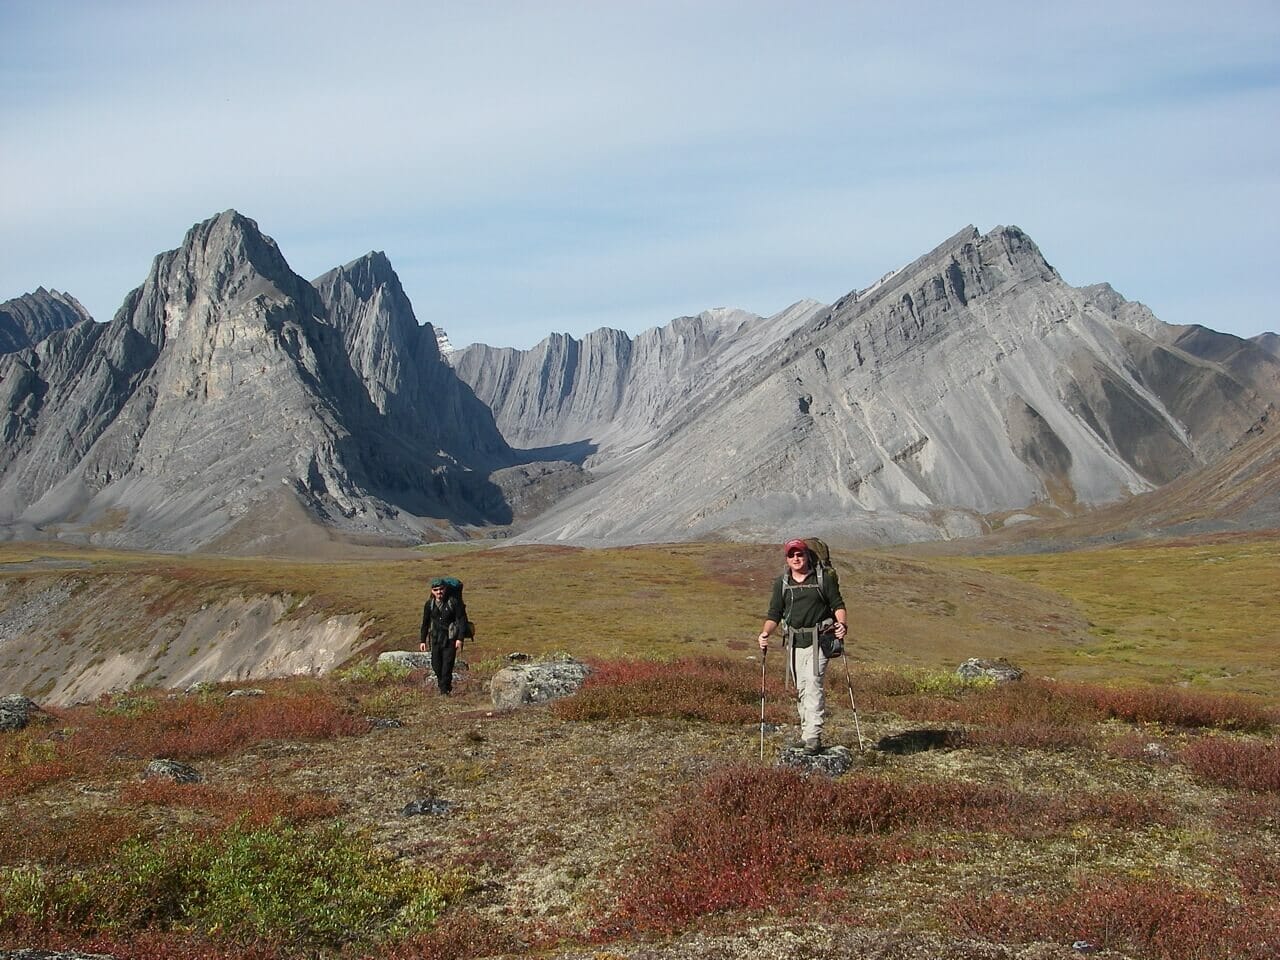 Endicott Mountains in Alaska's Brooks Range